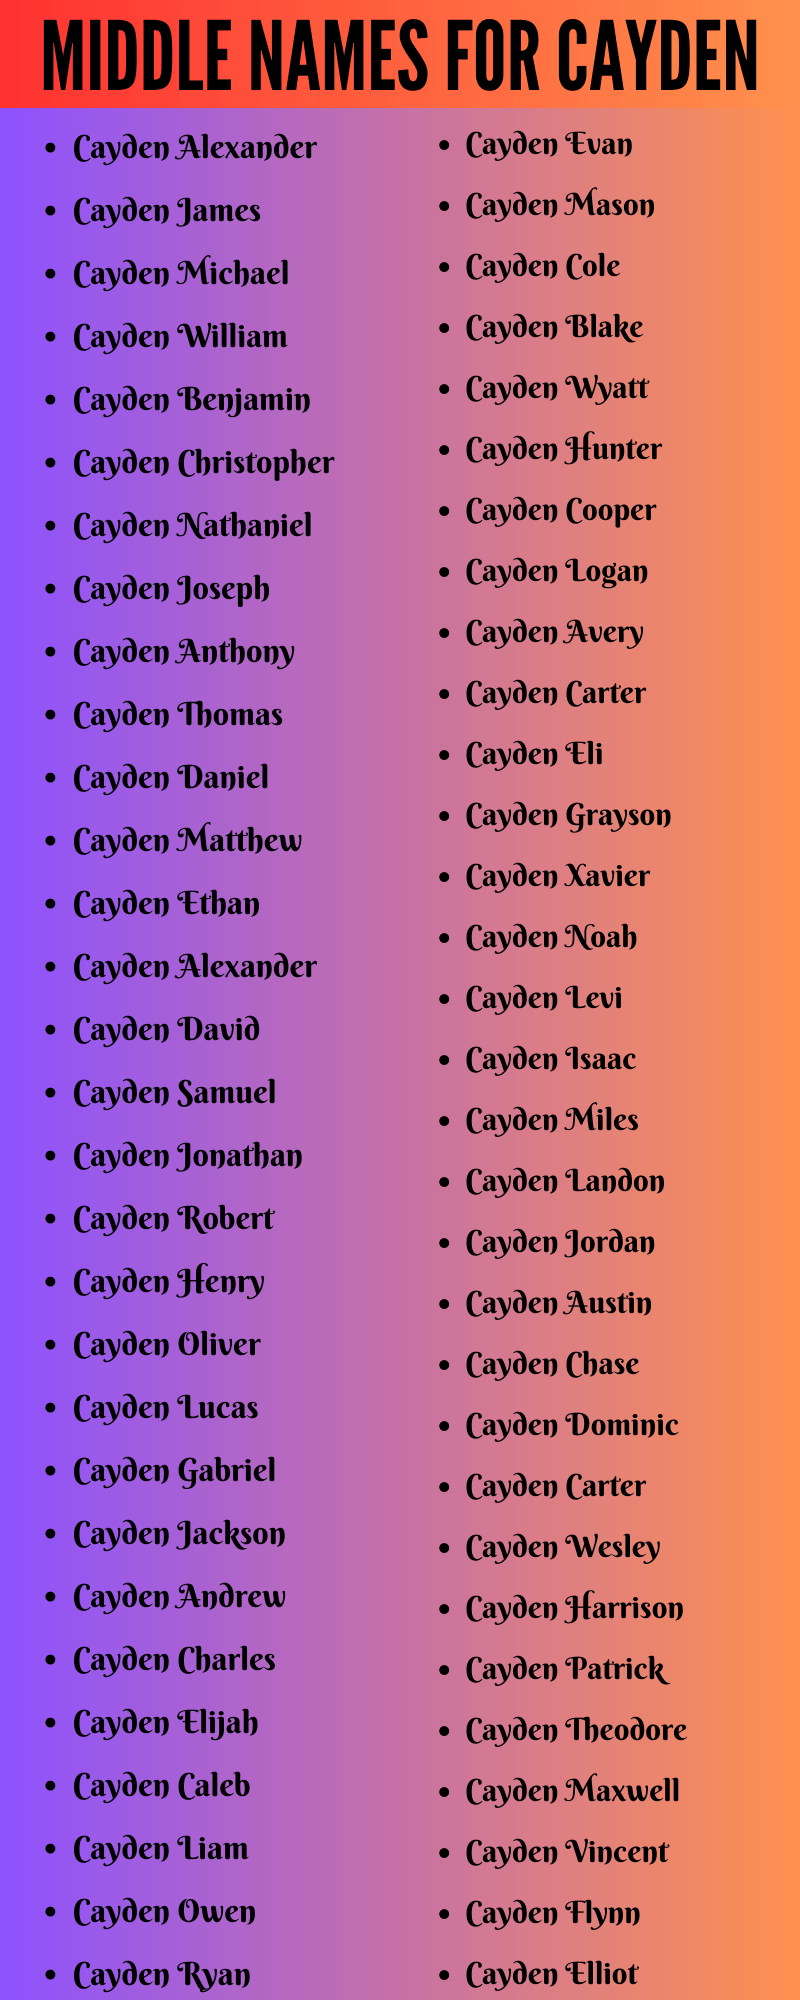 400 Best Middle Names For Cayden